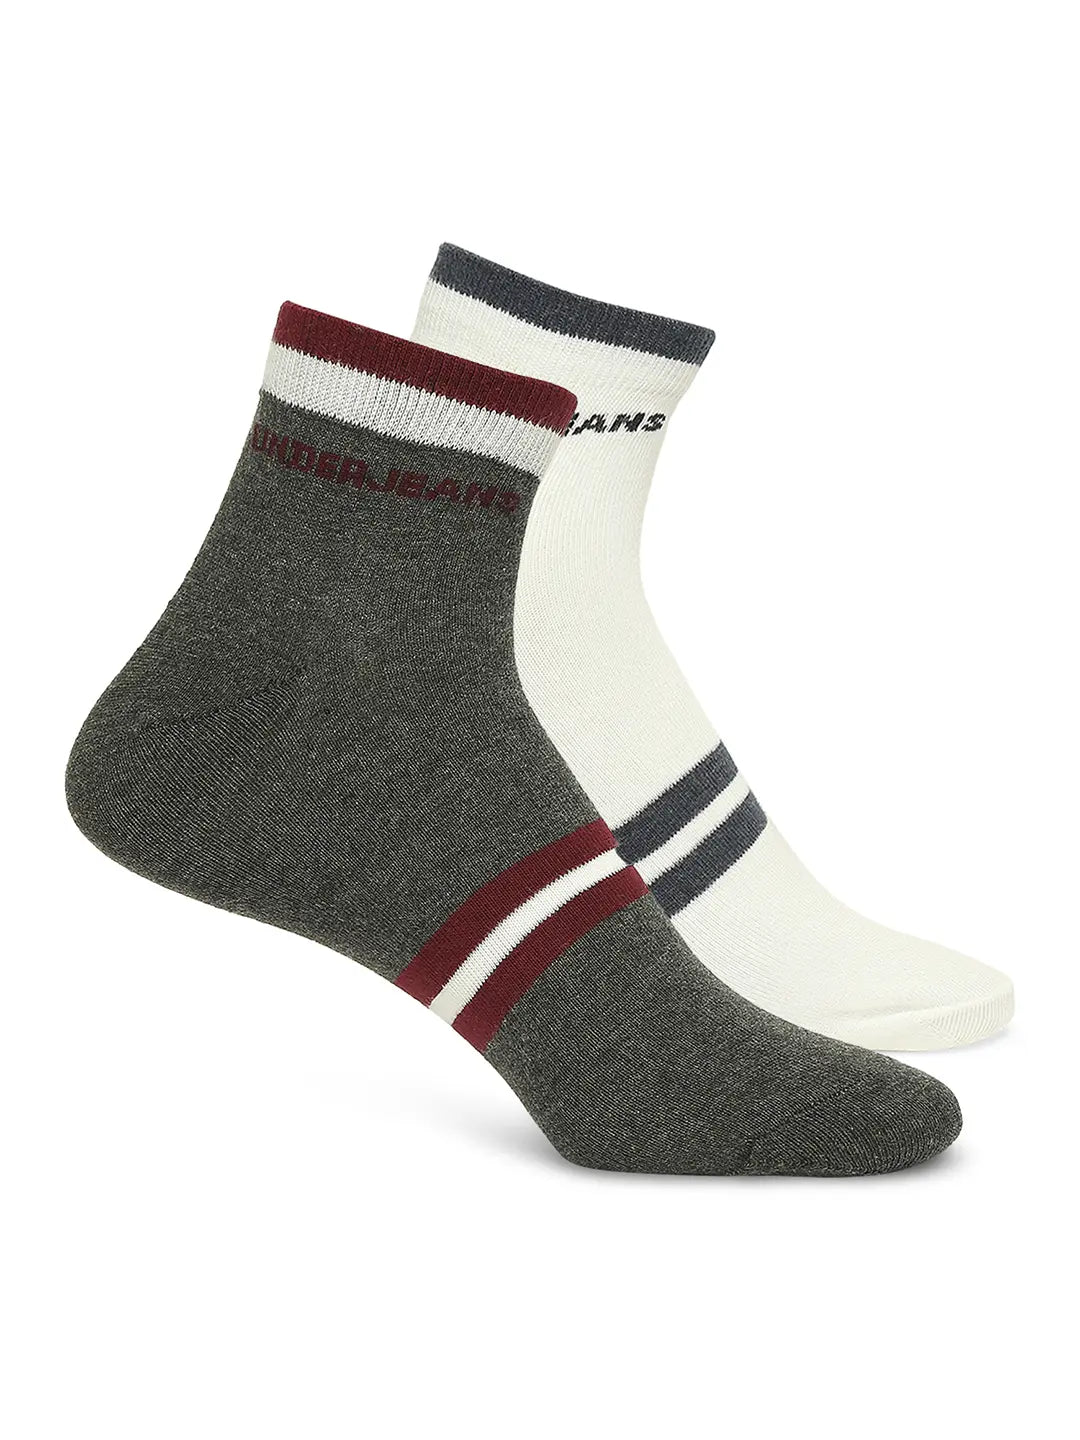 Men Premium Anthra Melange & White Ankle Length Socks - Pack Of 2- Underjeans by Spykar